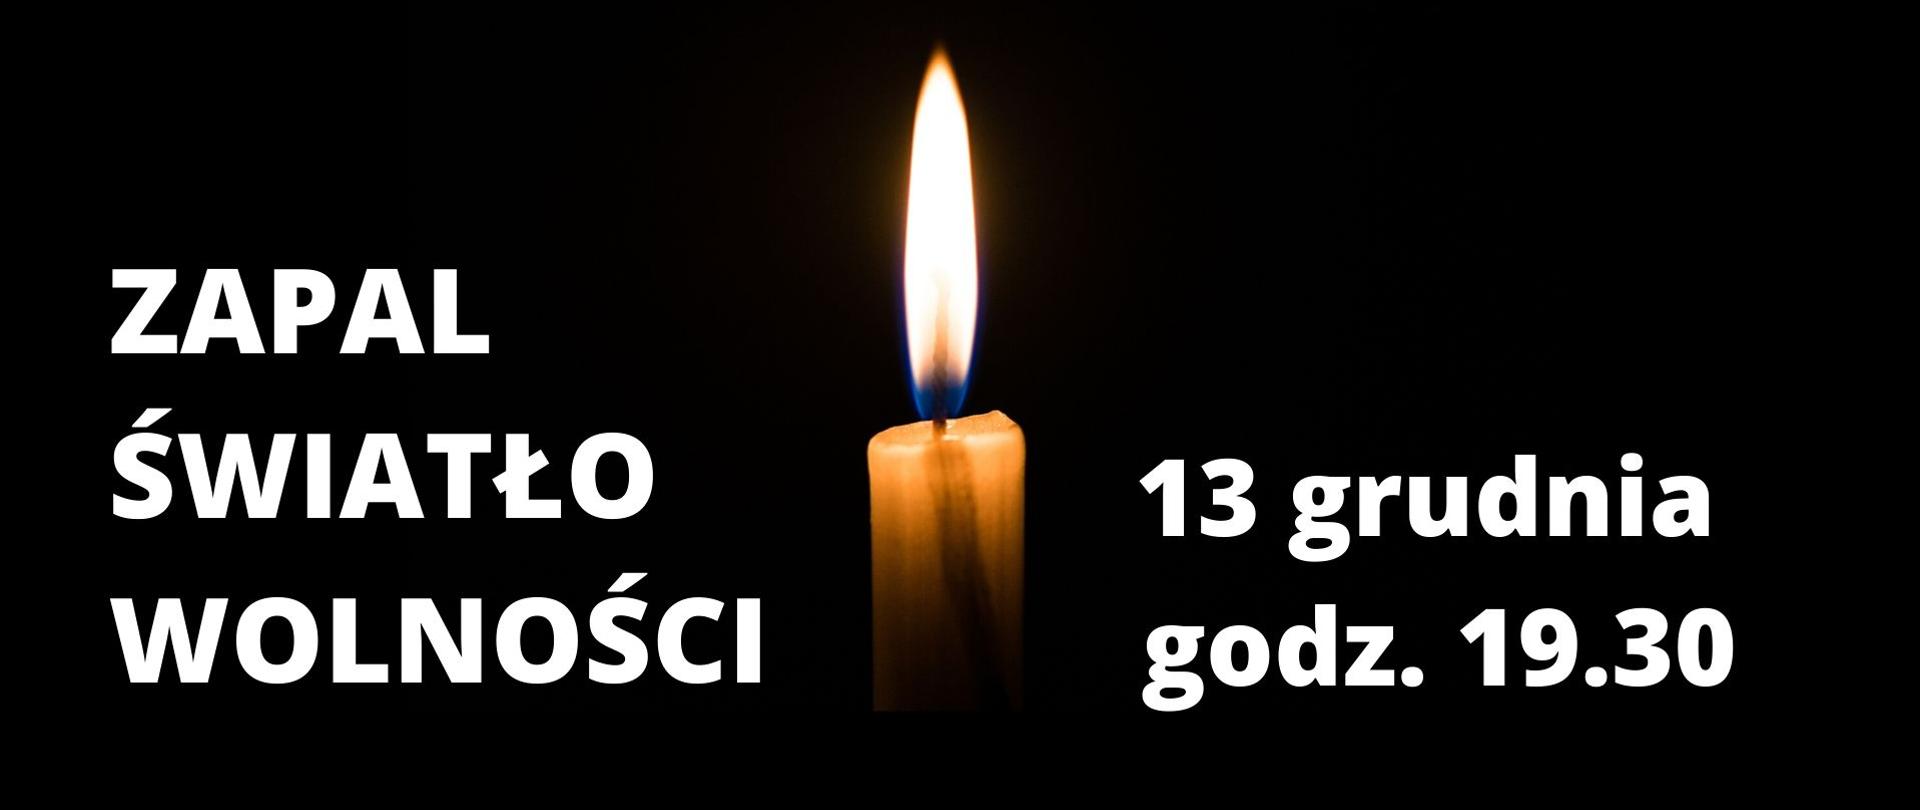 Płonąca świeca z napisem "Zapal Światło Wolności" 13 grudnia 19.30.